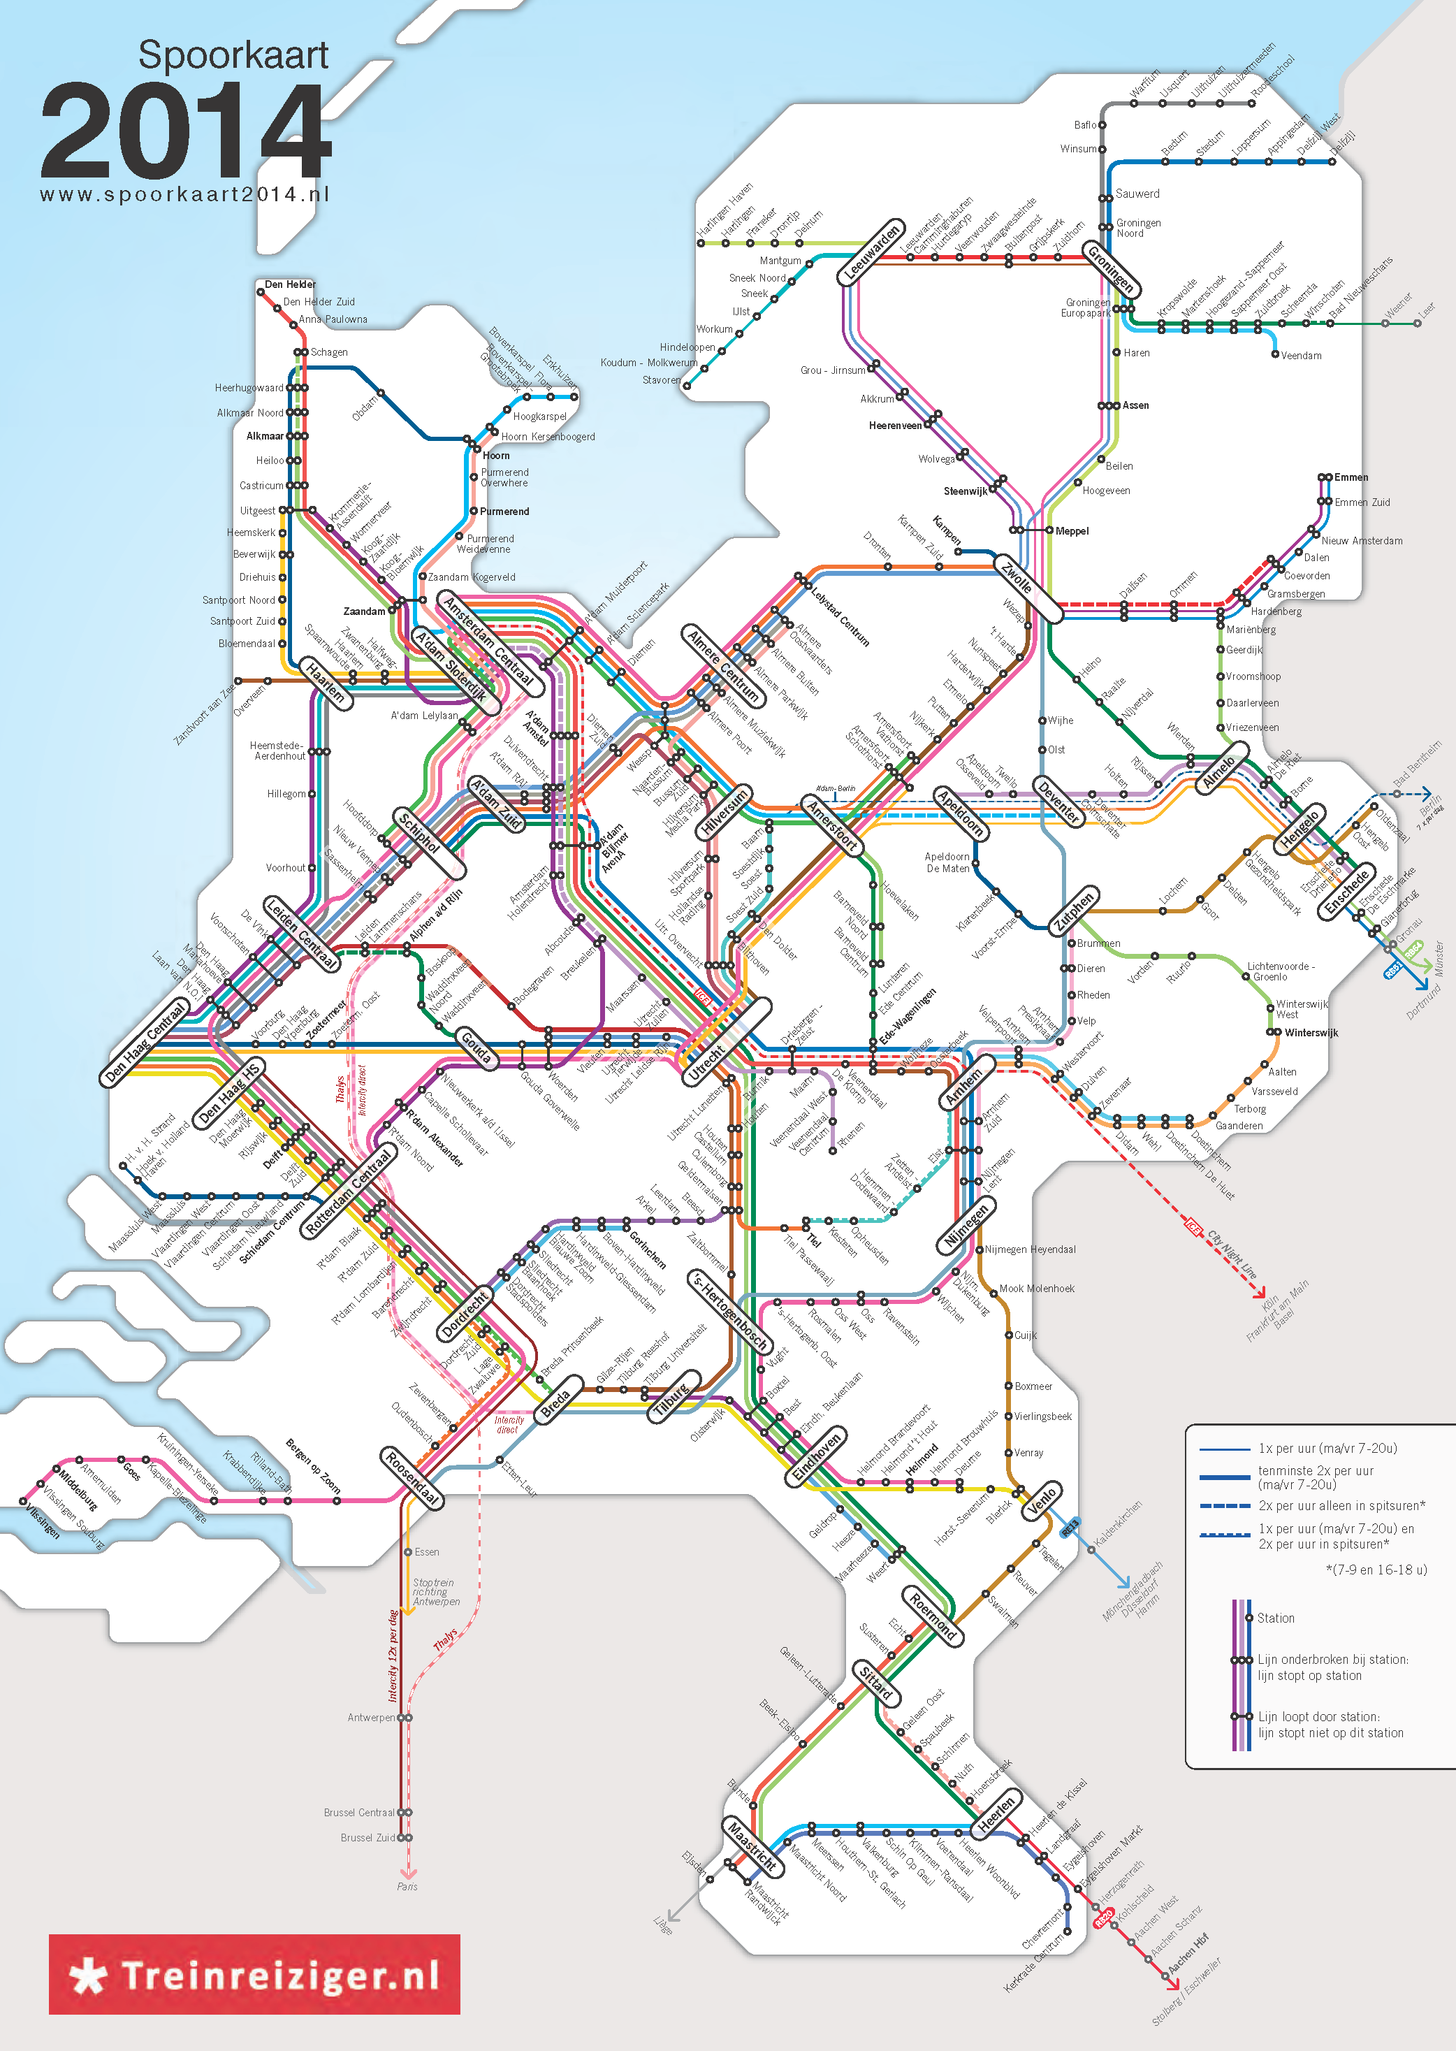 Réseau ferroviaire des Pays-Bas : un réseau équilibré de villes petites et moyennes.